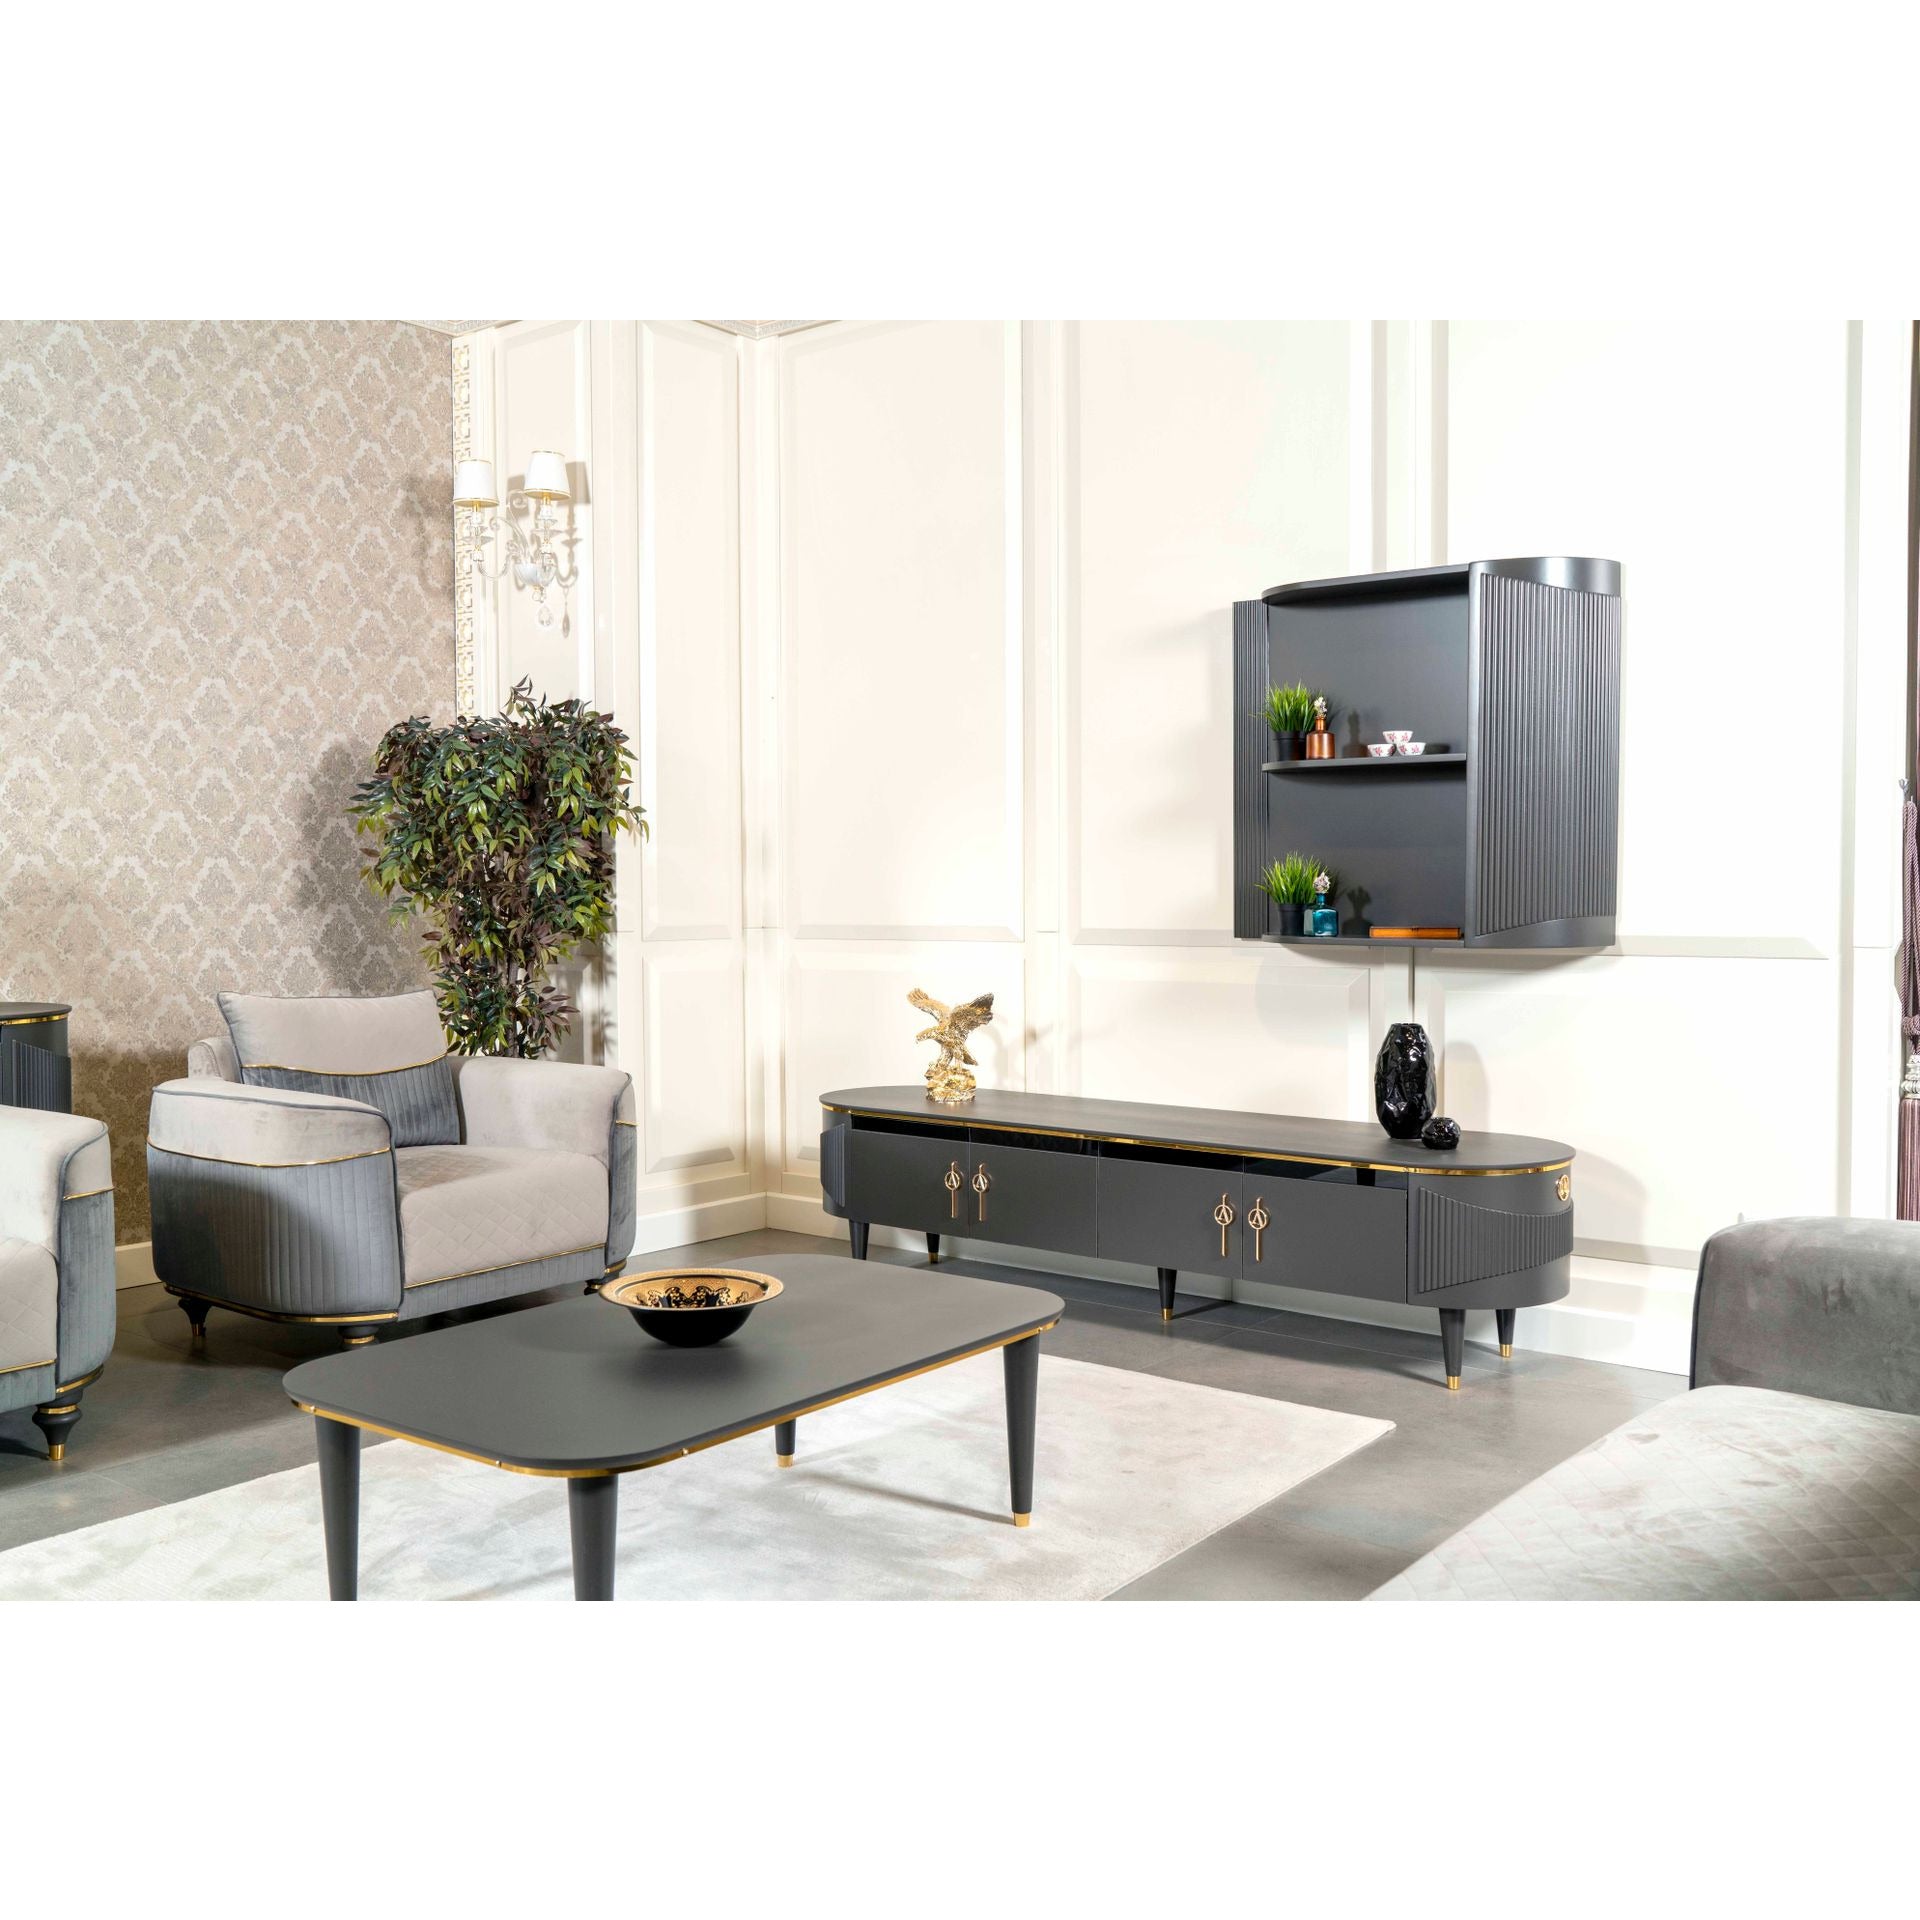 Isabella Stol - LINE Furniture Group